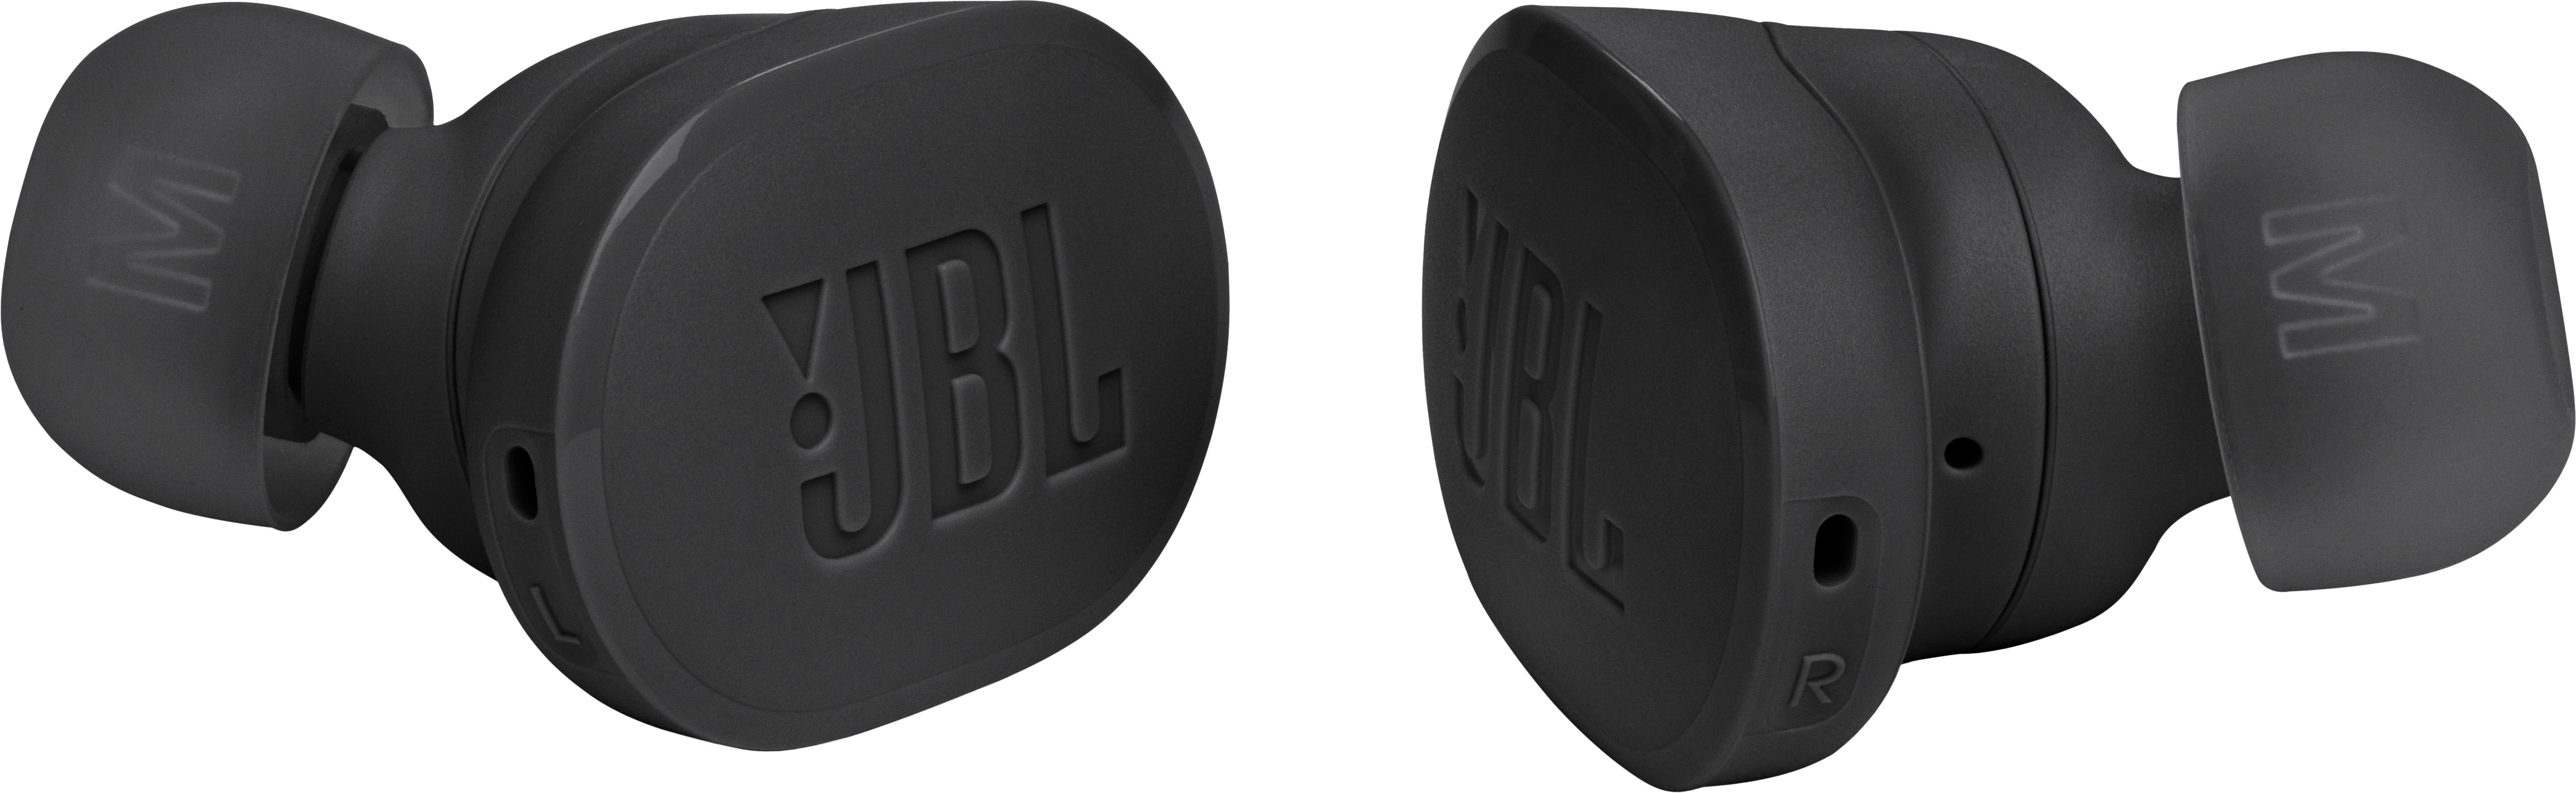 JBL Tune Buds True Wireless - Best Cancelling Earbuds Buy Black Noise JBLTBUDSBLKAM